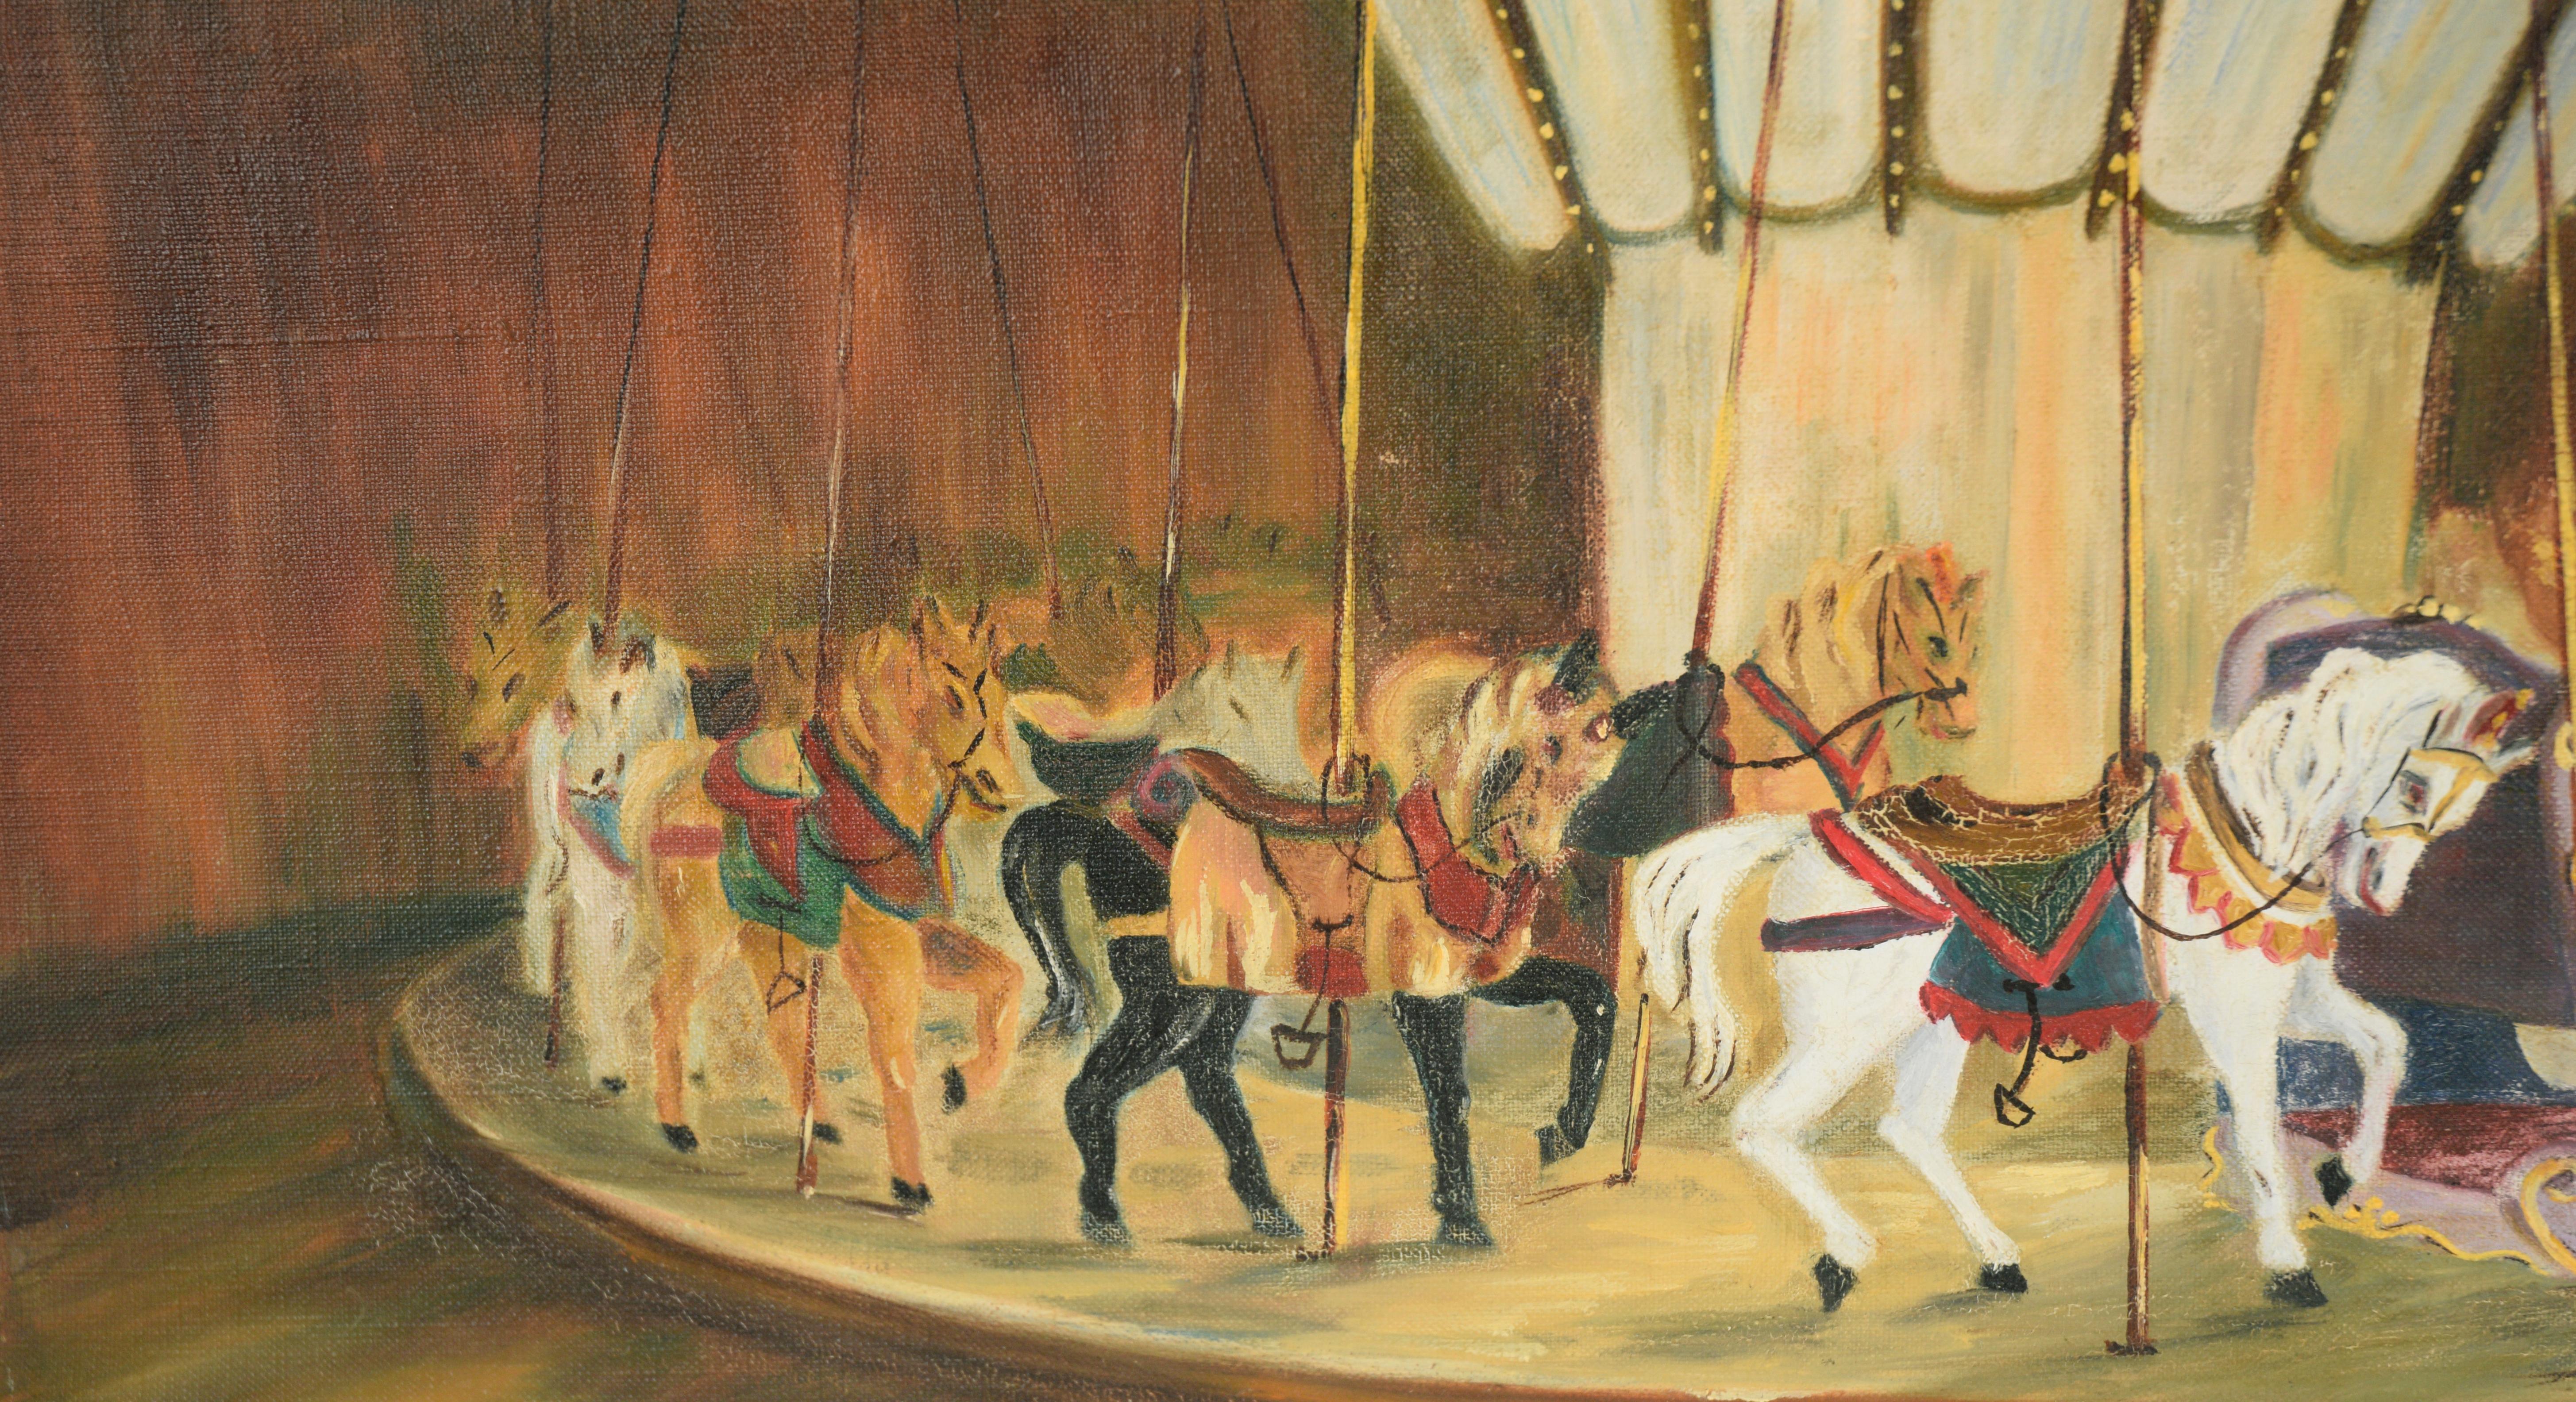 Carrousel du cheval blanc, 1956 - Huile sur toile

Peinture à l'huile d'un manège vide, un seul cheval blanc brille au centre. Trois portes sont visibles sur la droite, traversées par la lumière du soleil. 

Signé 